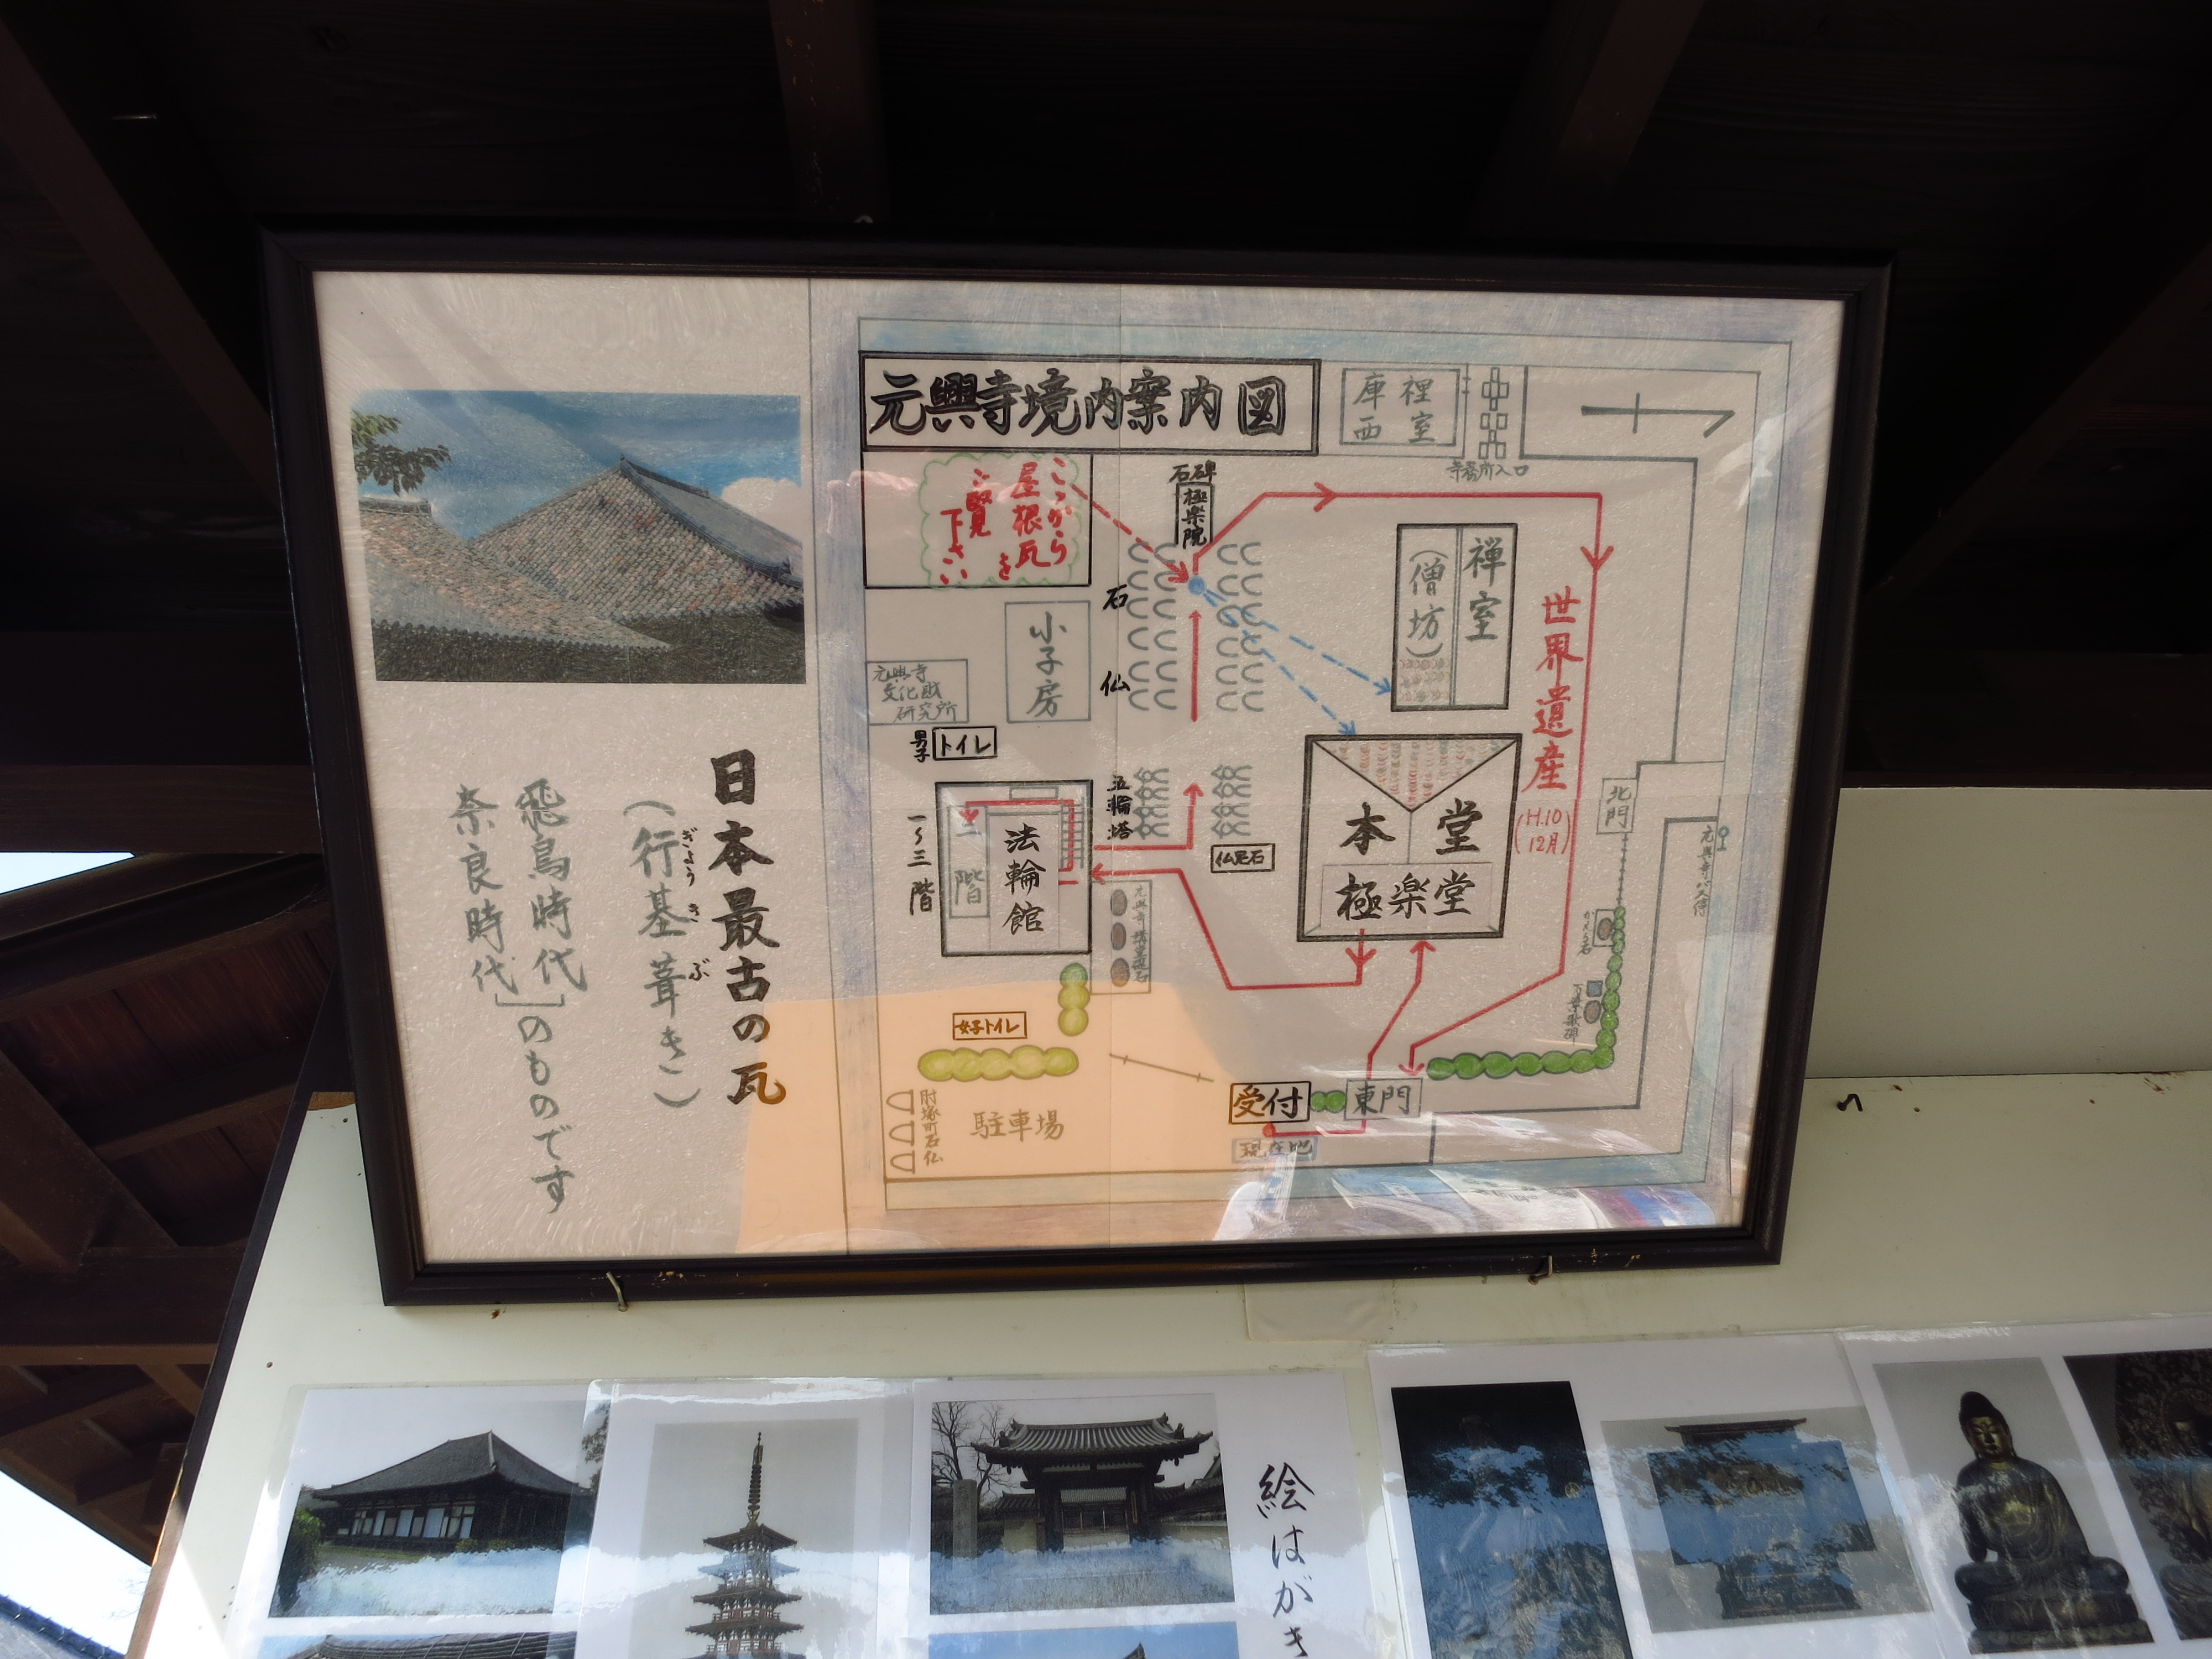 日本最古の瓦が見えるとのことで、ビューポイントの説明図がありました。